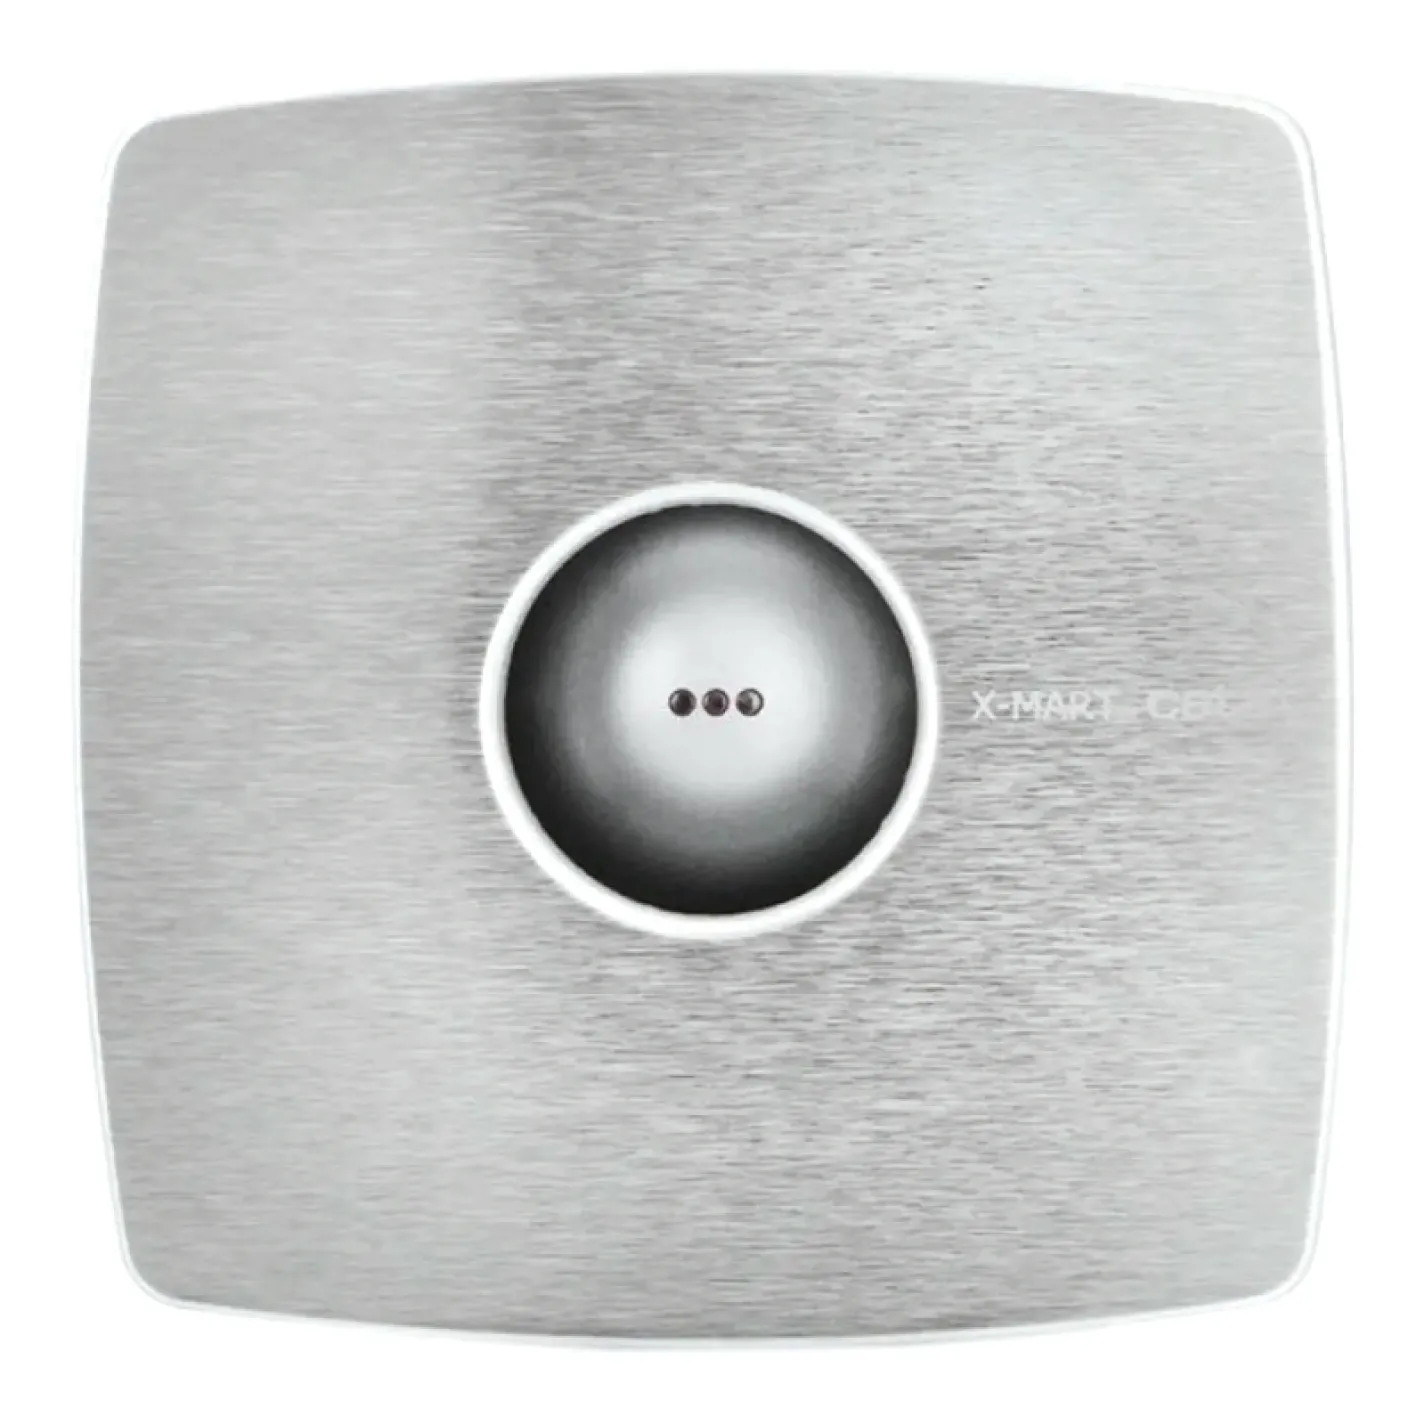 Вытяжной вентилятор Cata X-Mart 12 Inox - Фото 1